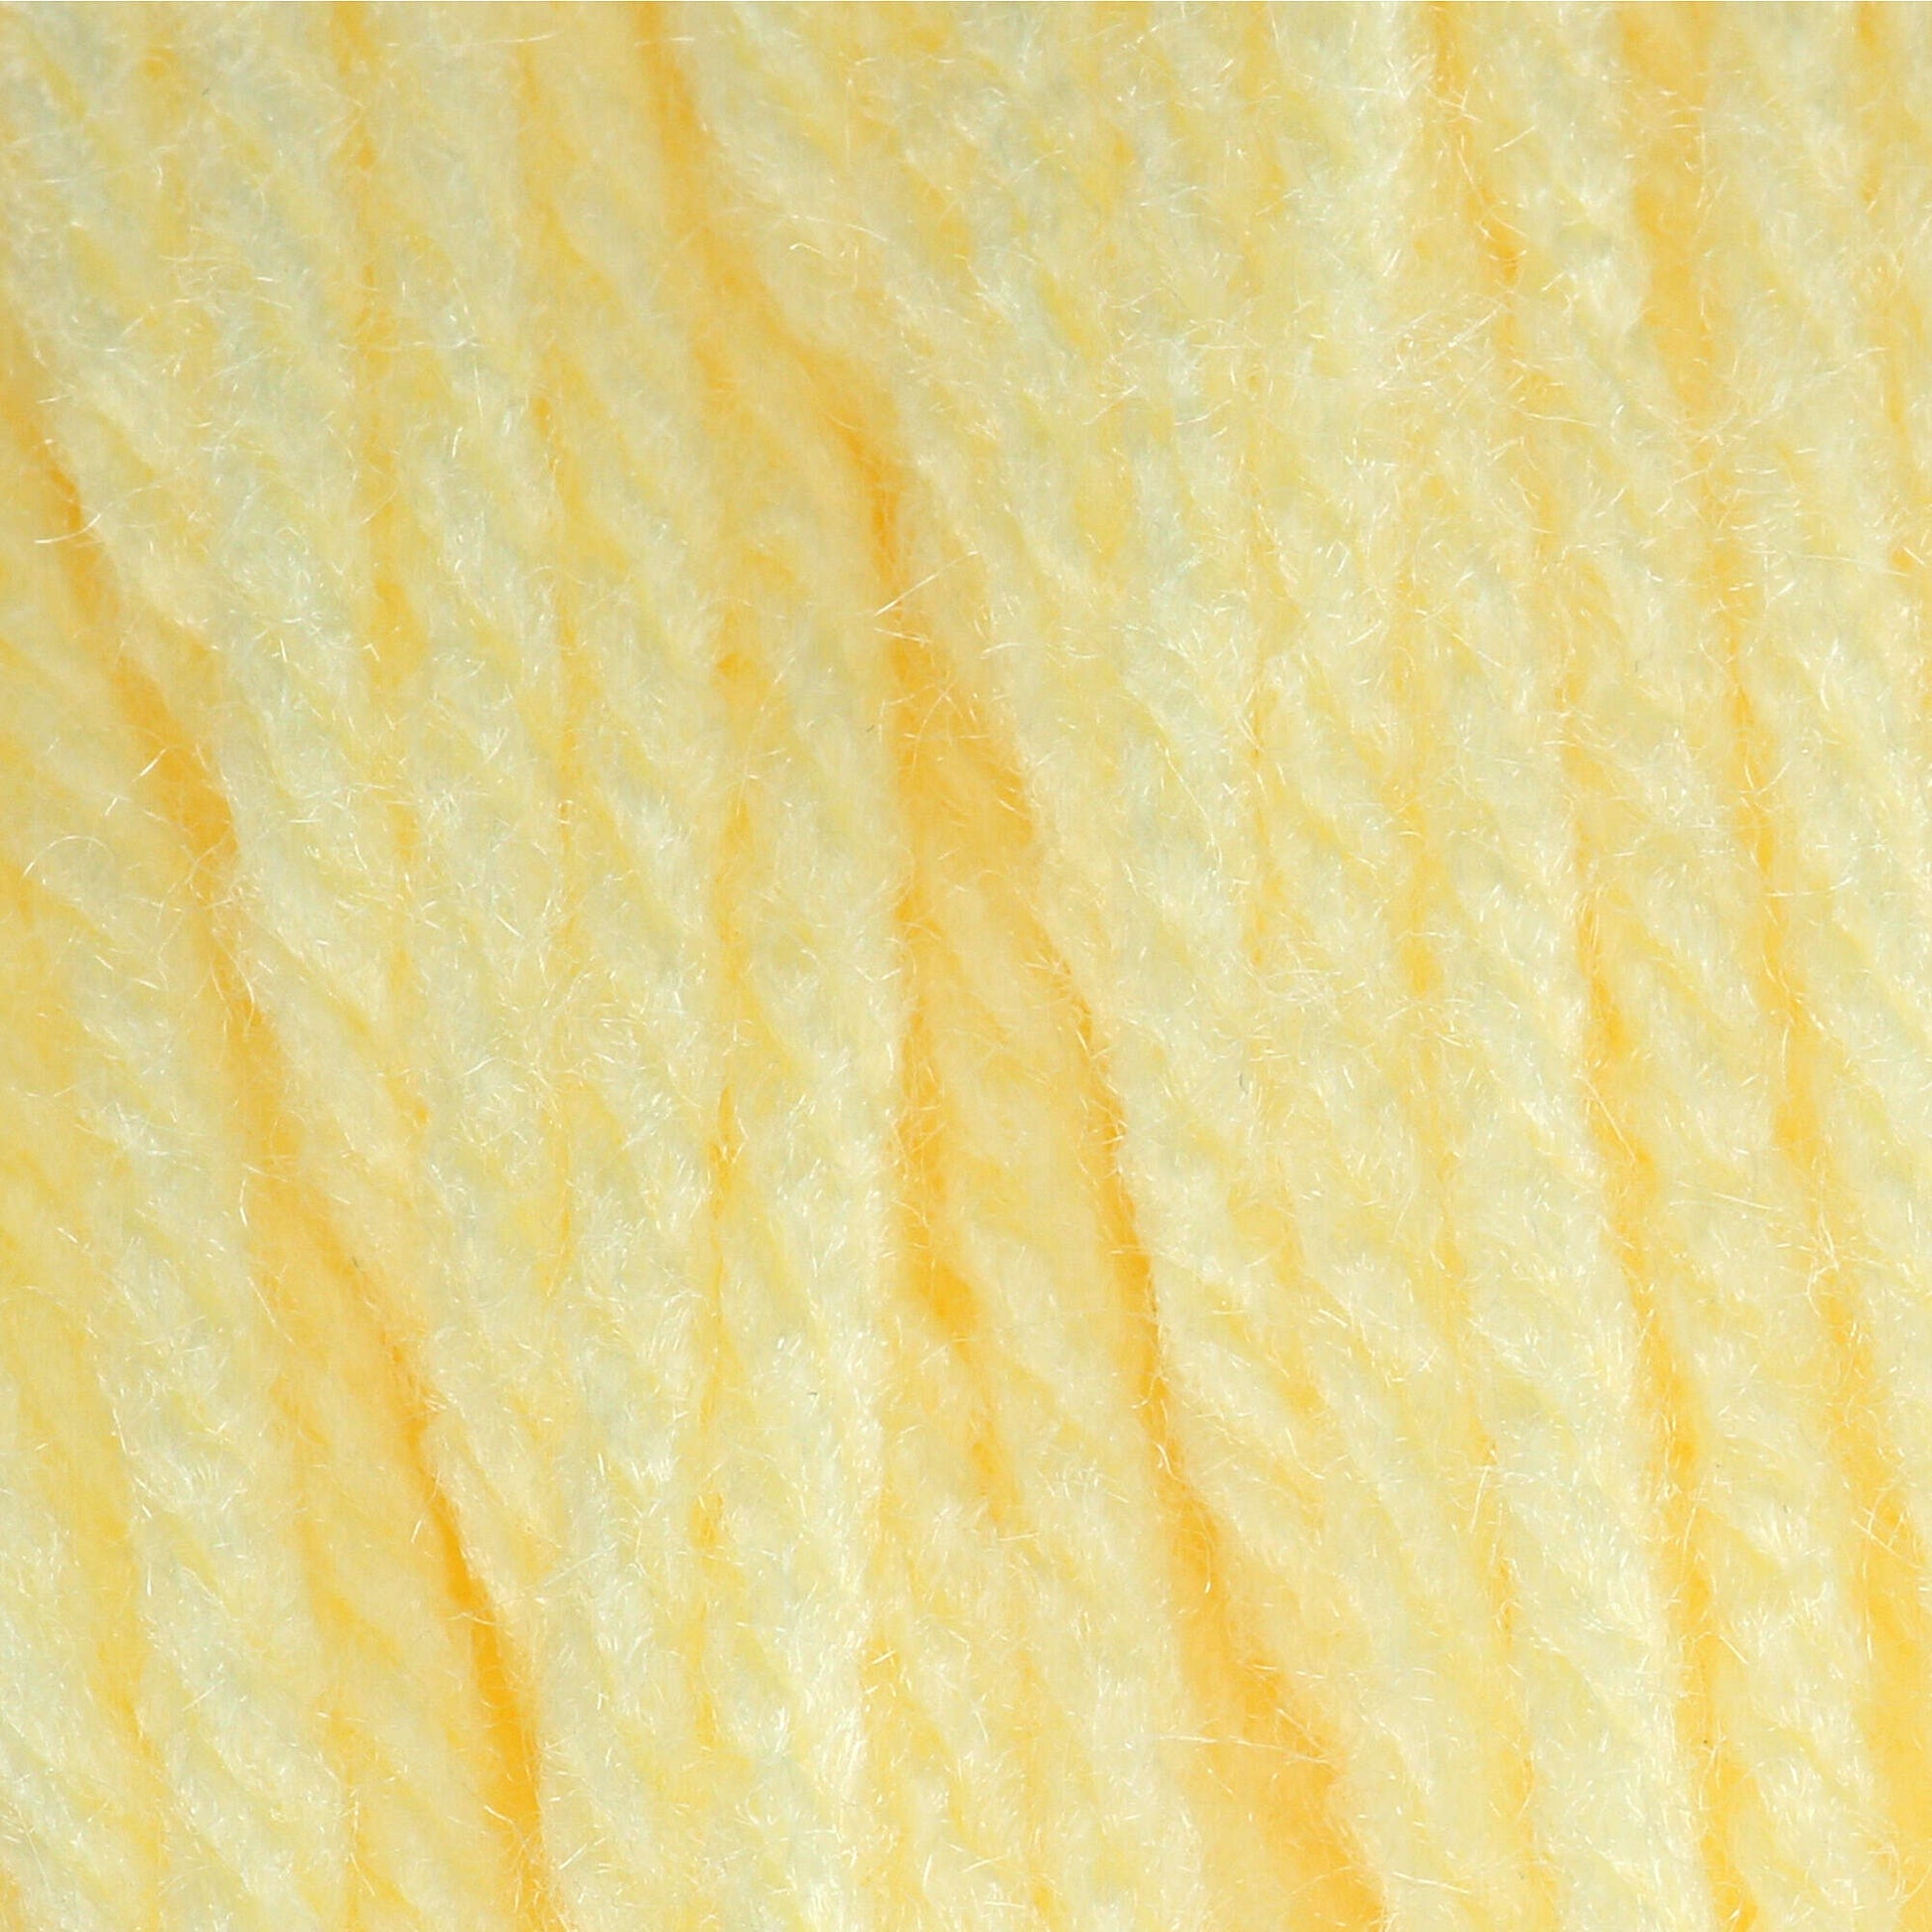 Bernat Super Value Yarn Yellow